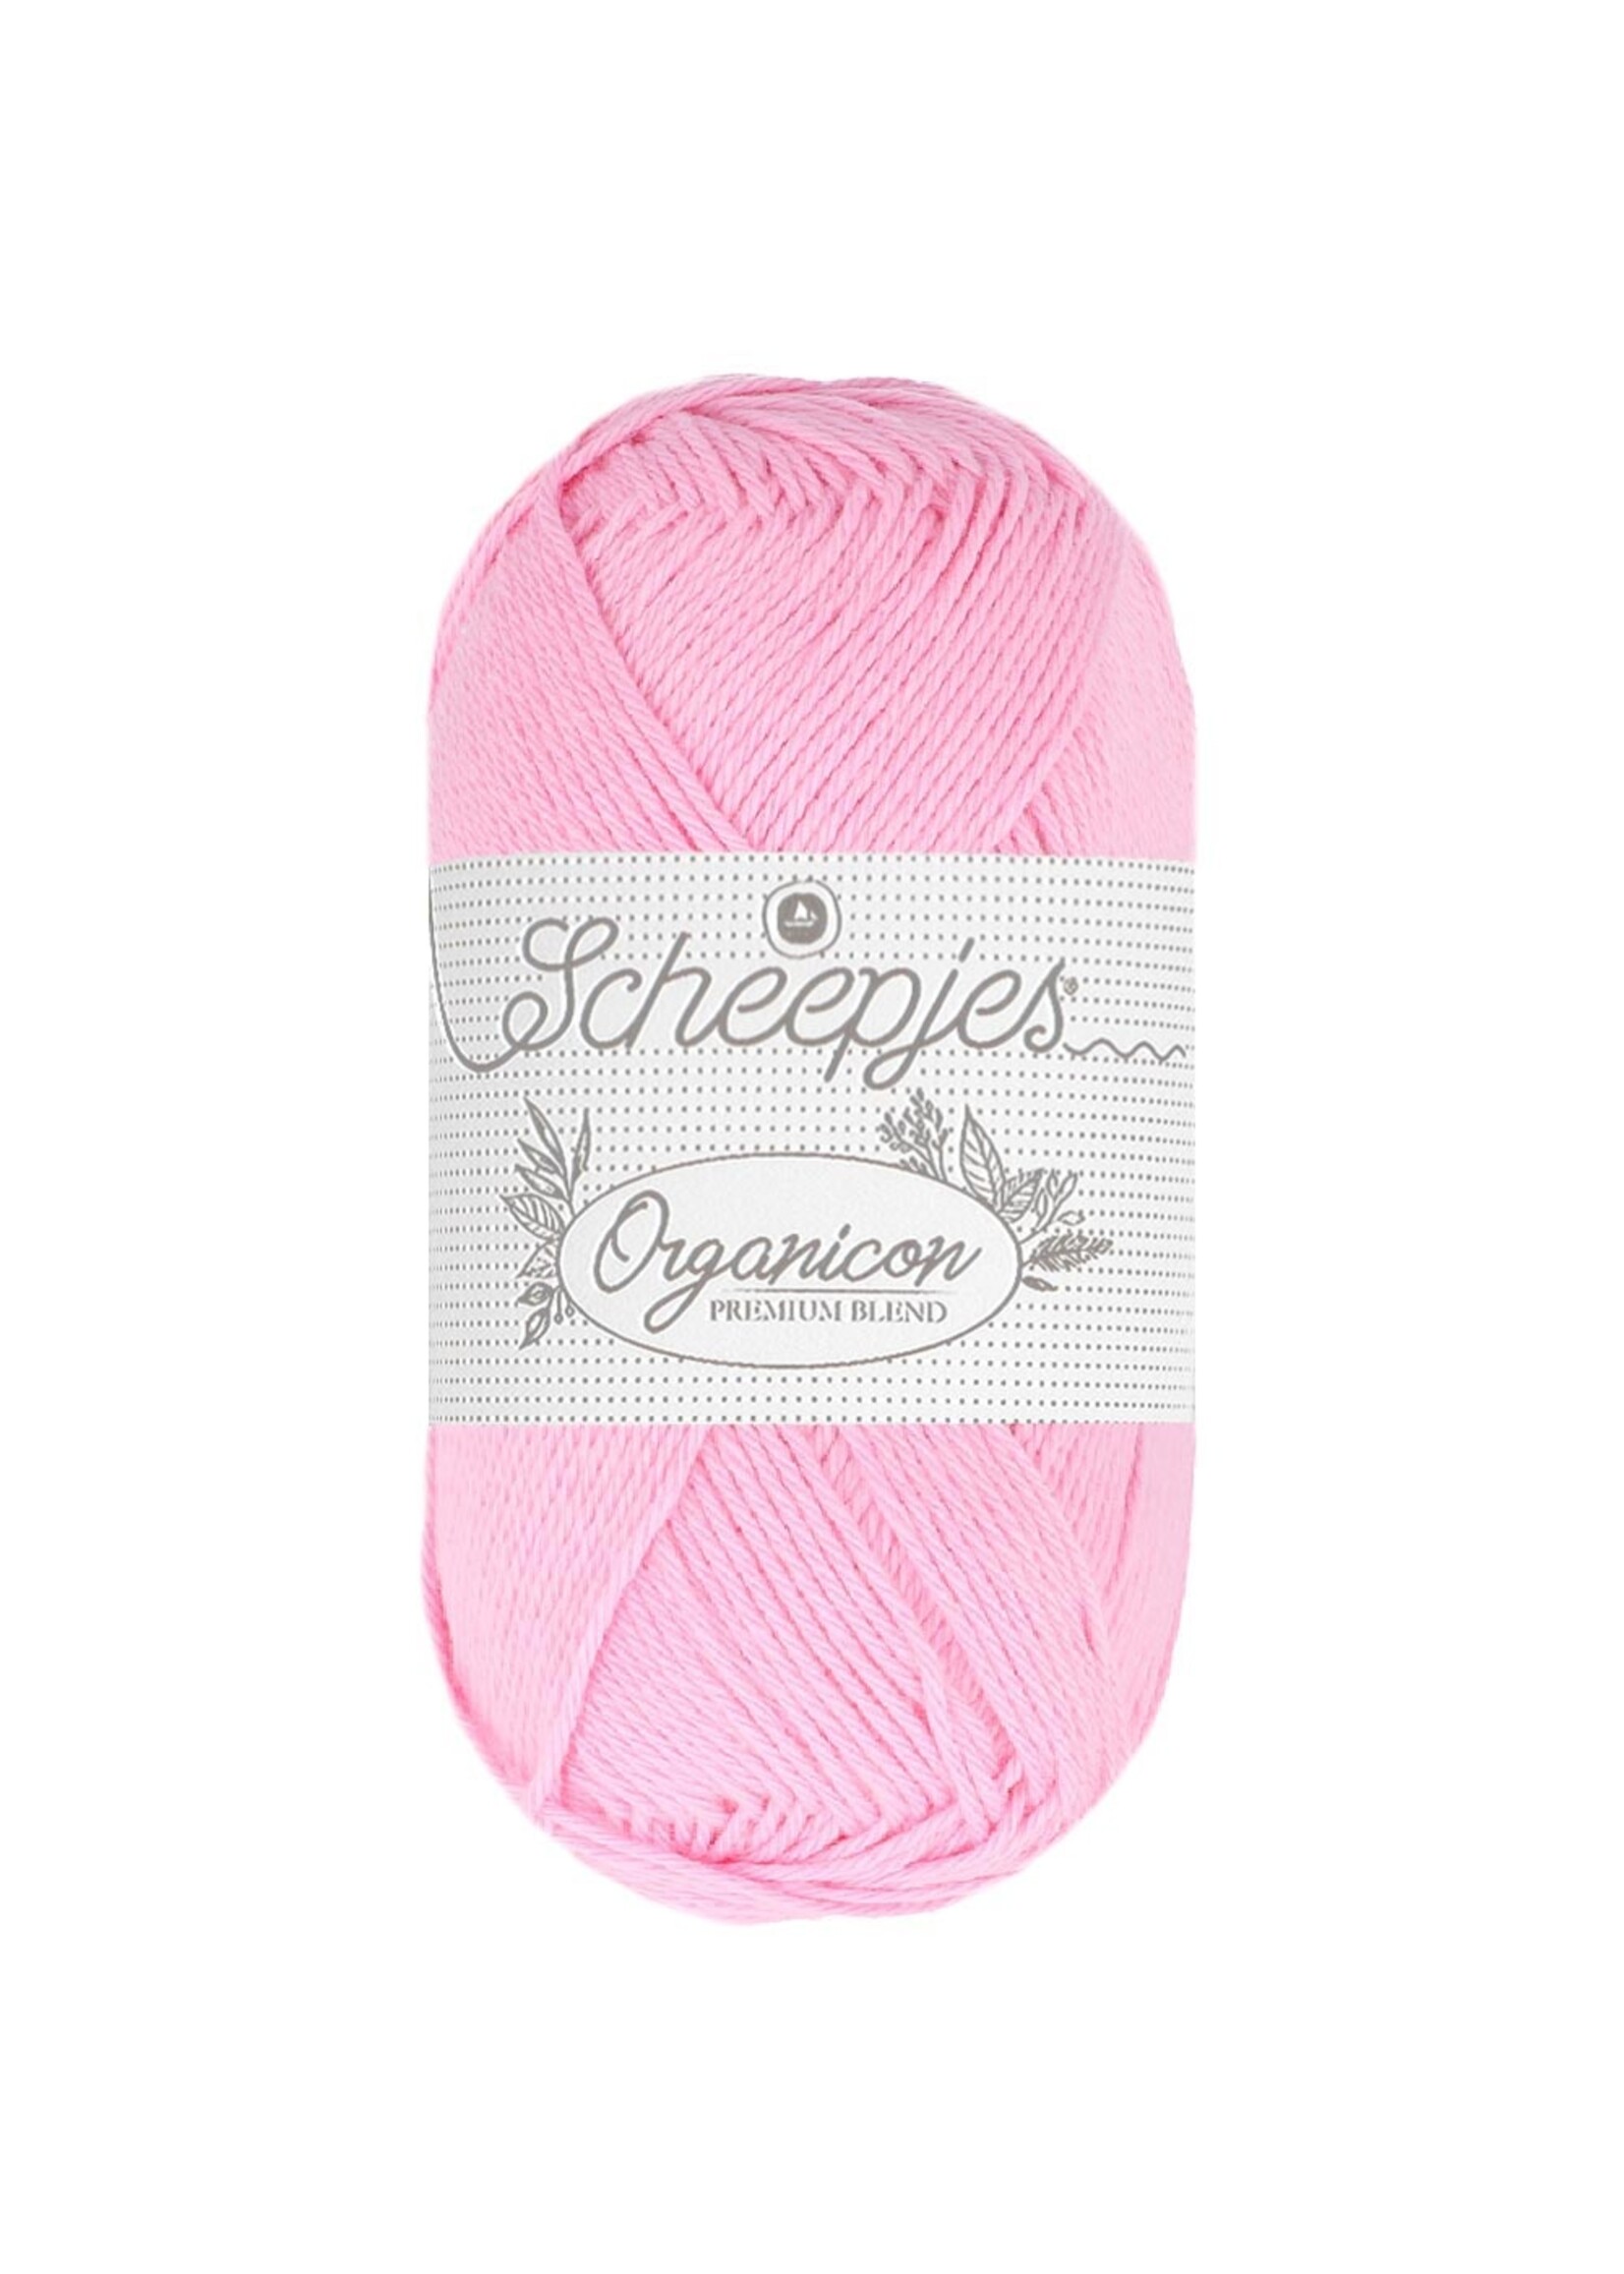 Scheepjes Organicon 50gr - 249 Pink Petunia